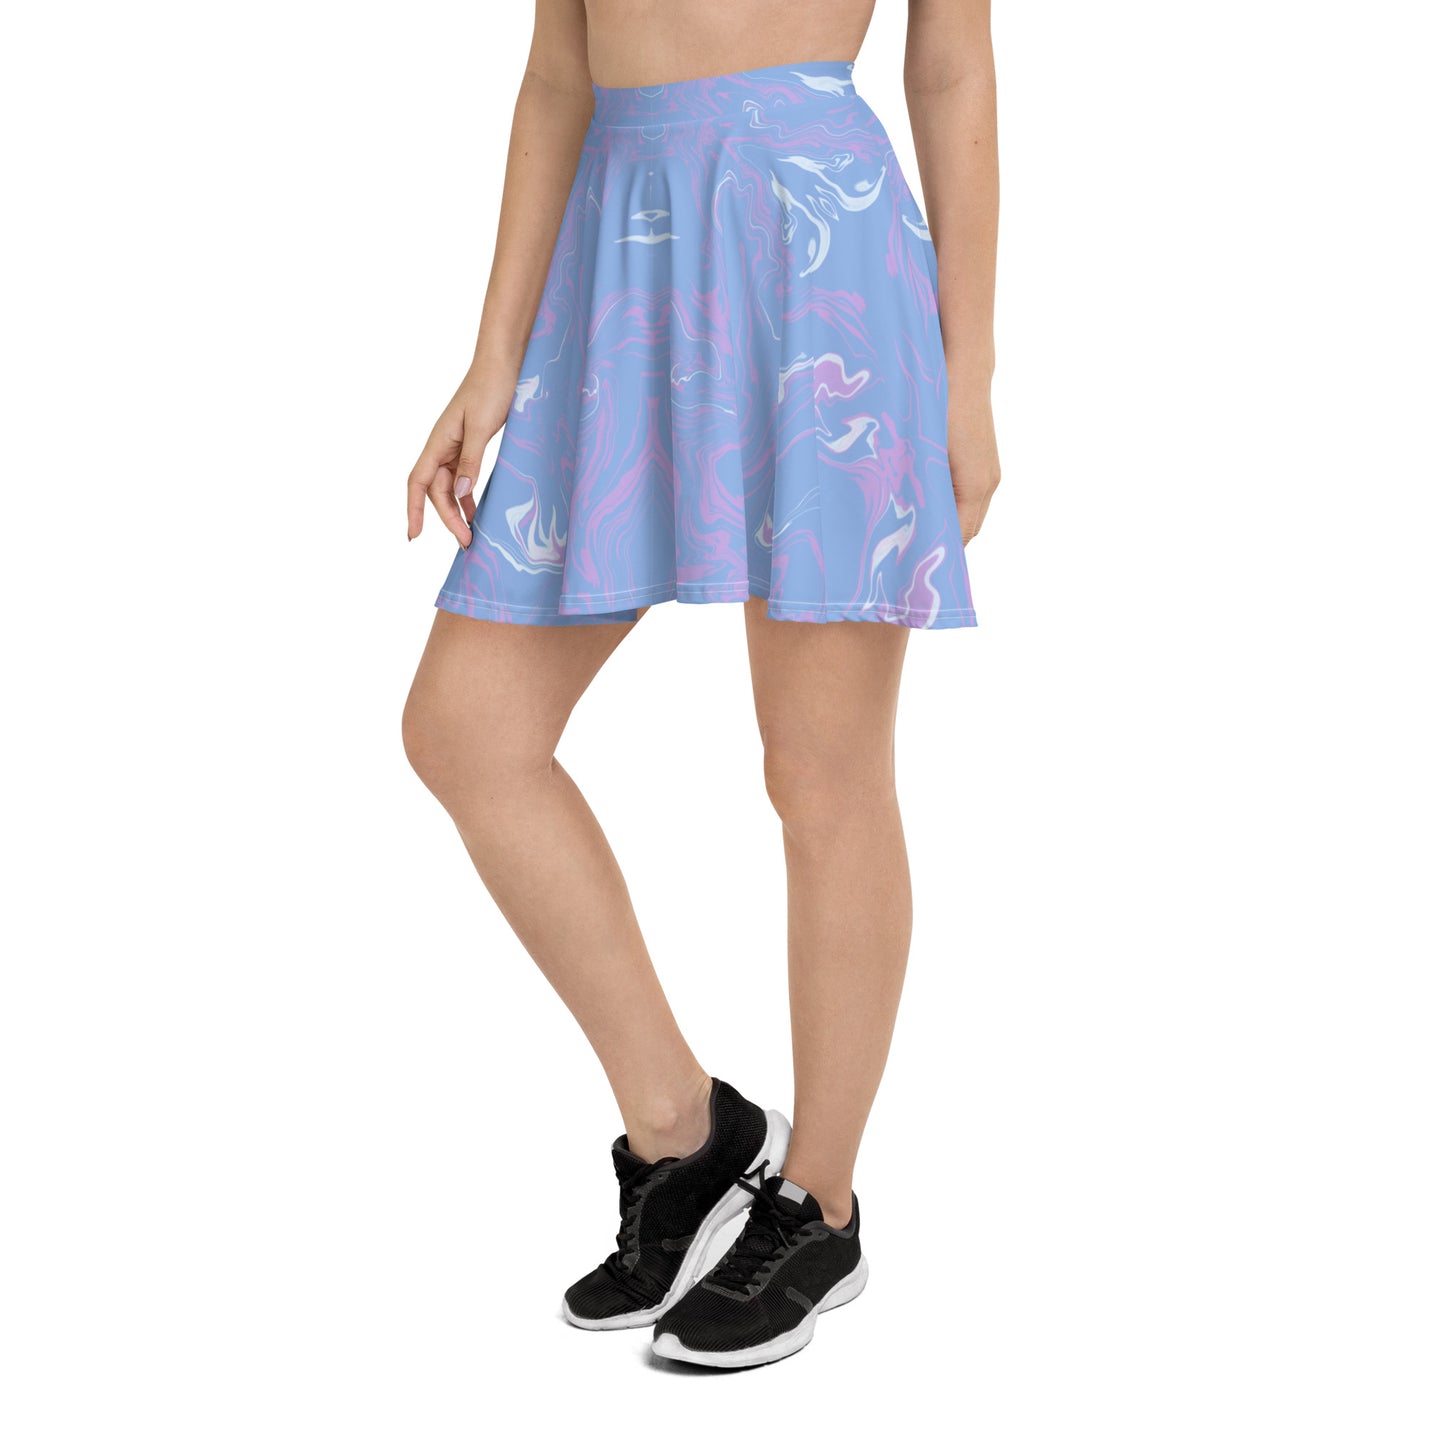 Athena Skater Skirt